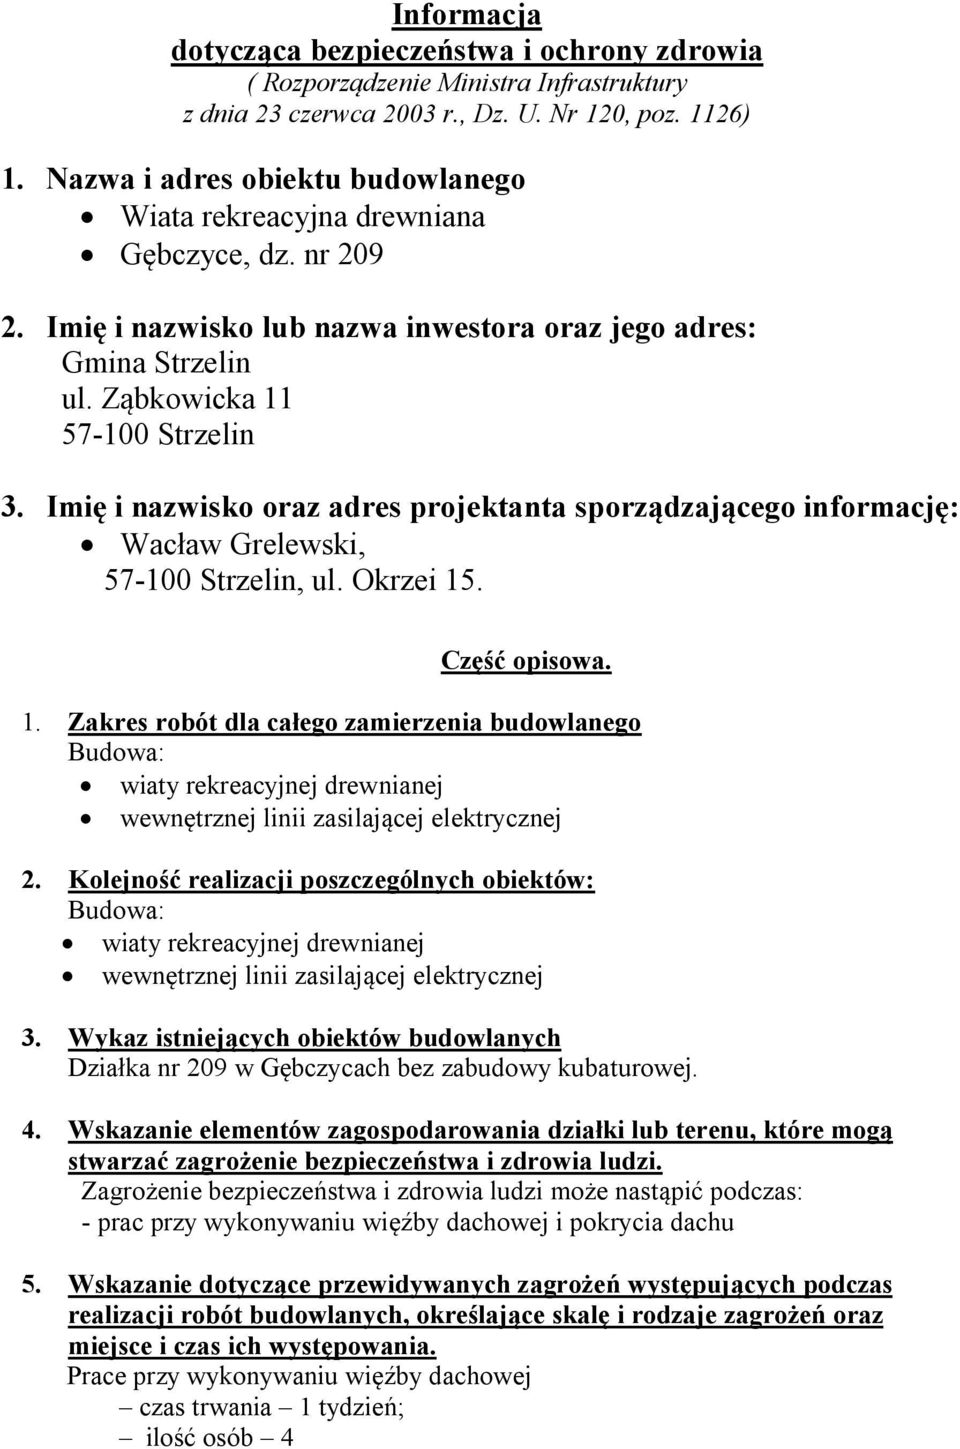 Imię i nazwisko oraz adres projektanta sporządzającego informację: Wacław Grelewski, 57-100 Strzelin, ul. Okrzei 15